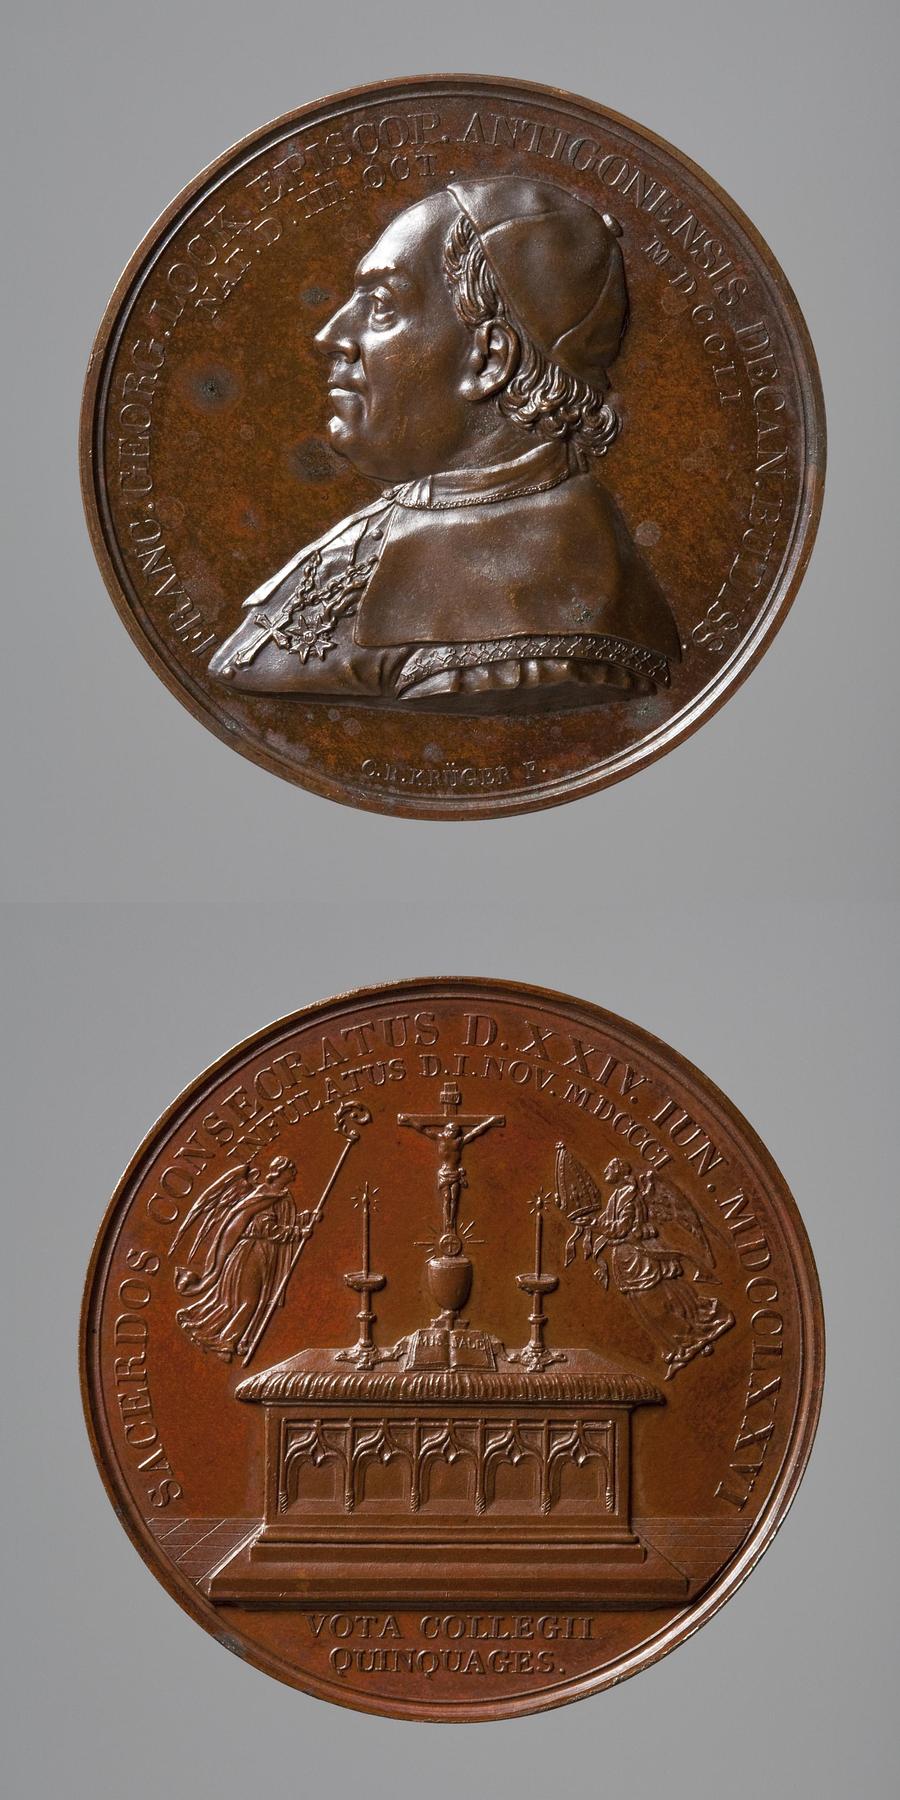 Medaljens forside: Biskop Lock fra Antiokia. Medaljens bagside: To engler med bispedømmets insignier svæver over et alter, F98